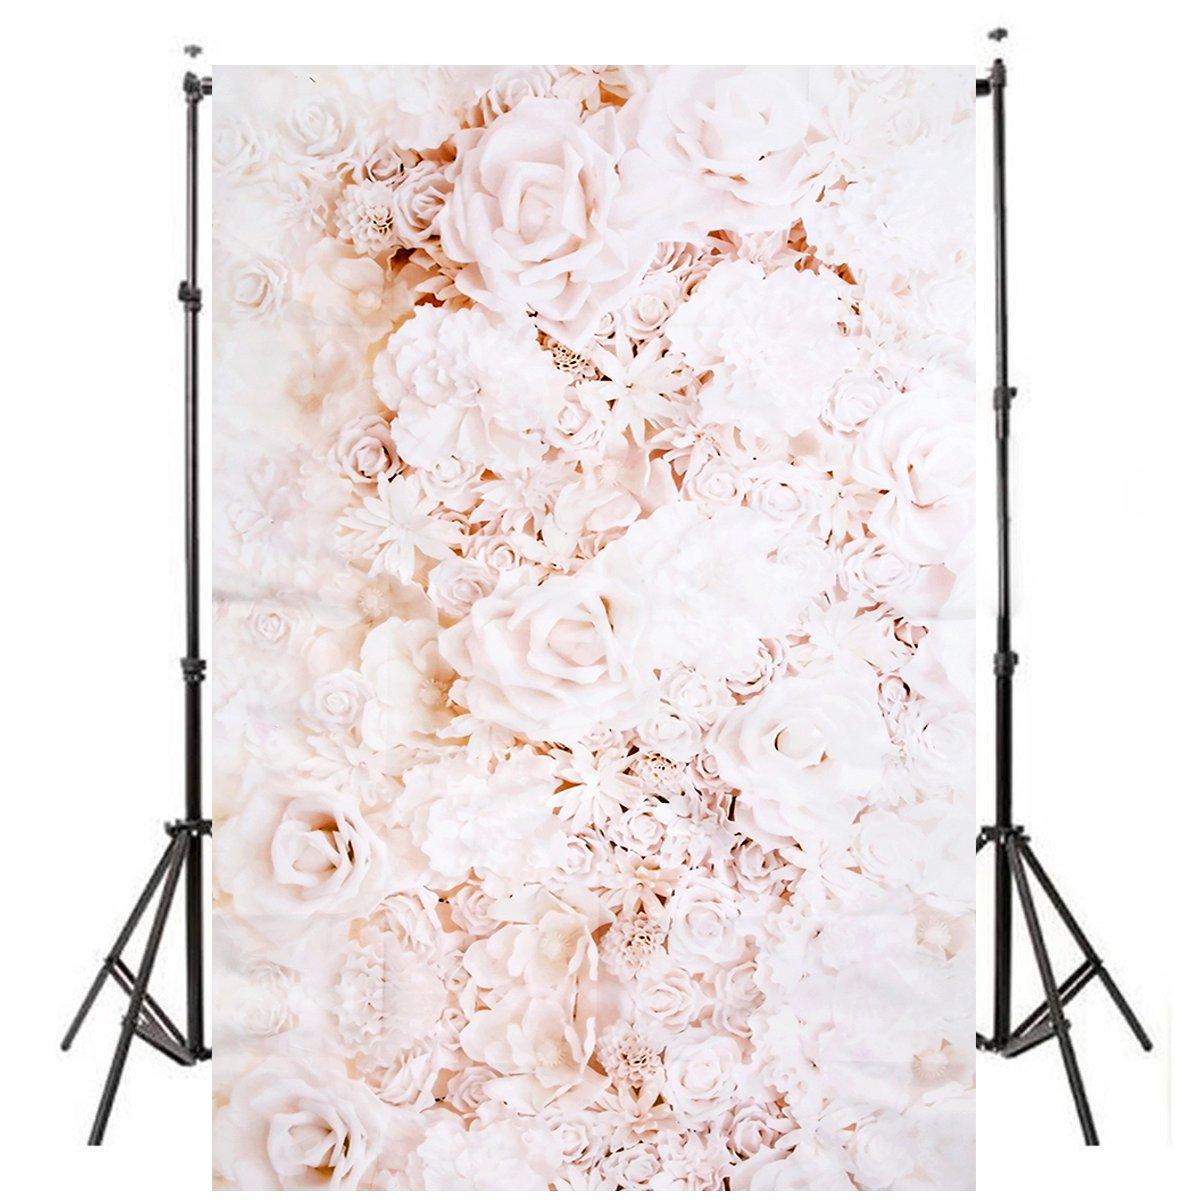 3x5FT 4x5FT muur witte roos bloem Vinyl fotografie achtergrond achtergrond fotostudio Prop